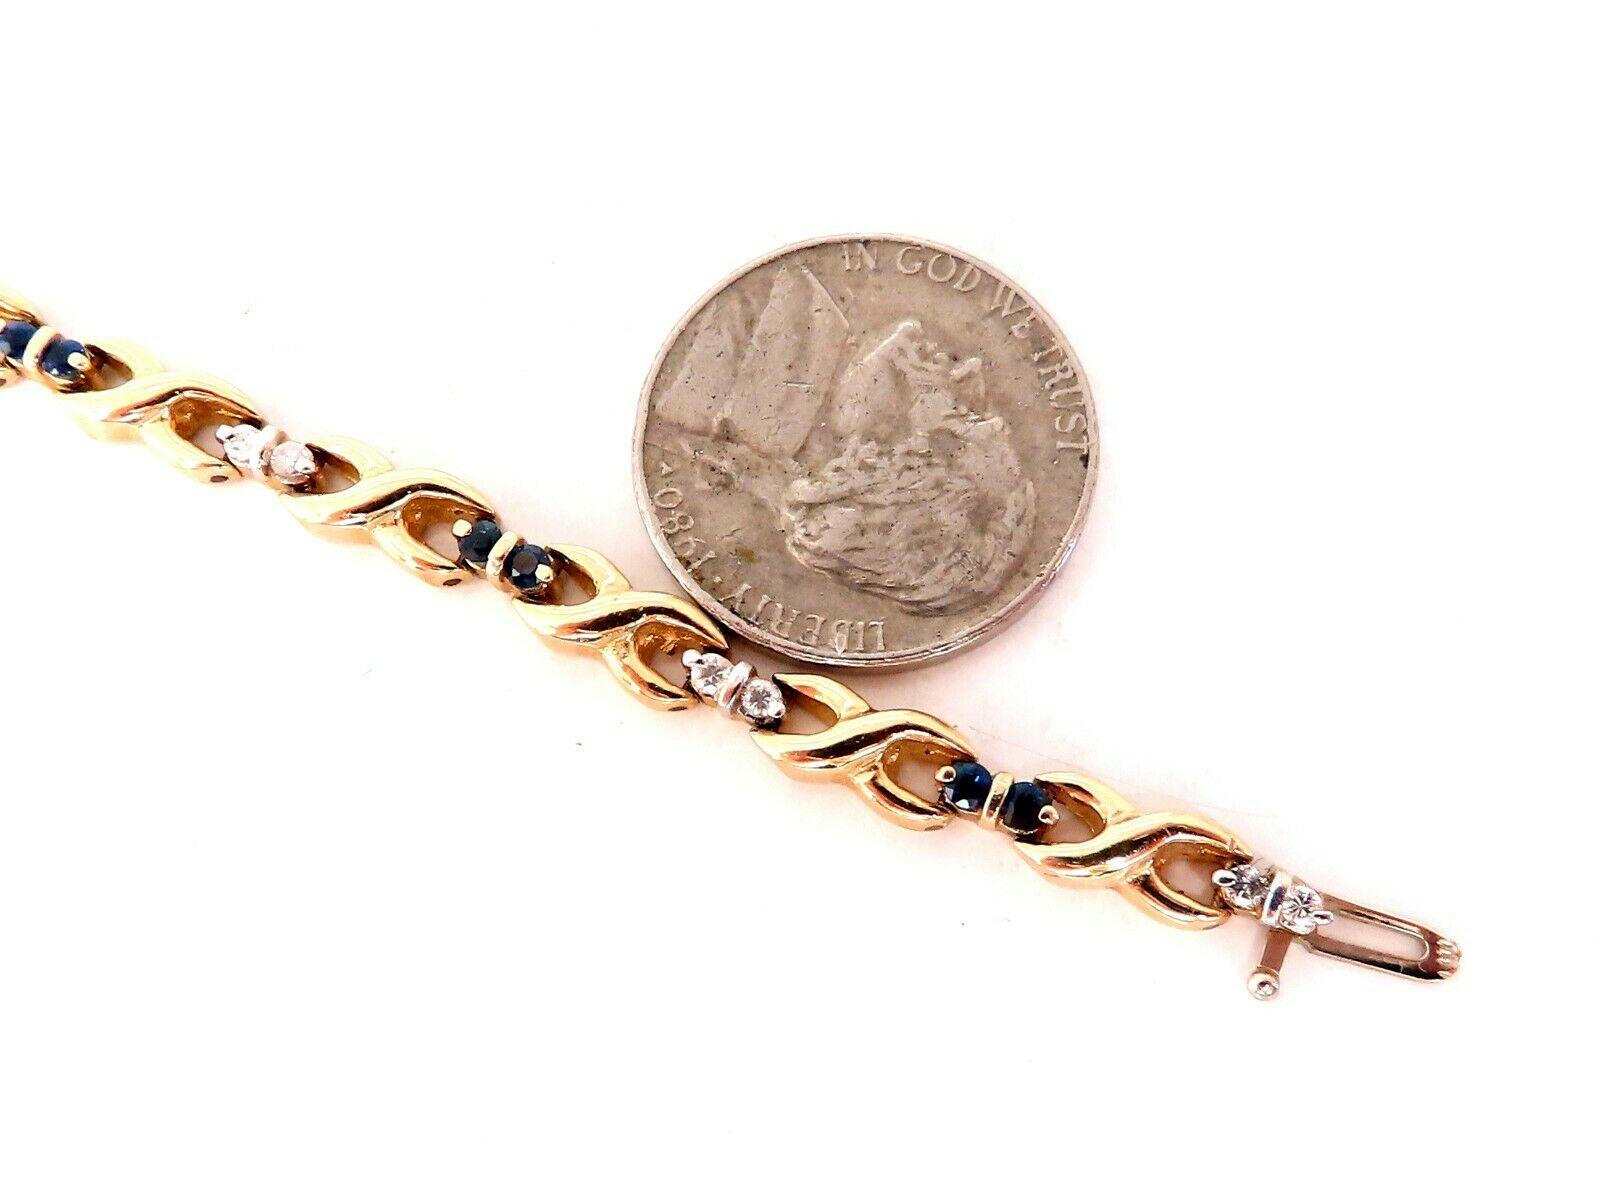 .80ct natürlichen runden blauen Saphir Armband.

durchschnittlich 2 mm pro Stück.

Diamanten: 0,36ct. 

Farbe H, Reinheit Vs-2.

14kt. Gelbgold

Das Armband misst 7 Zoll.

4.6 mm breit

Kostenloser versicherter Versand.

12.1 Gramm